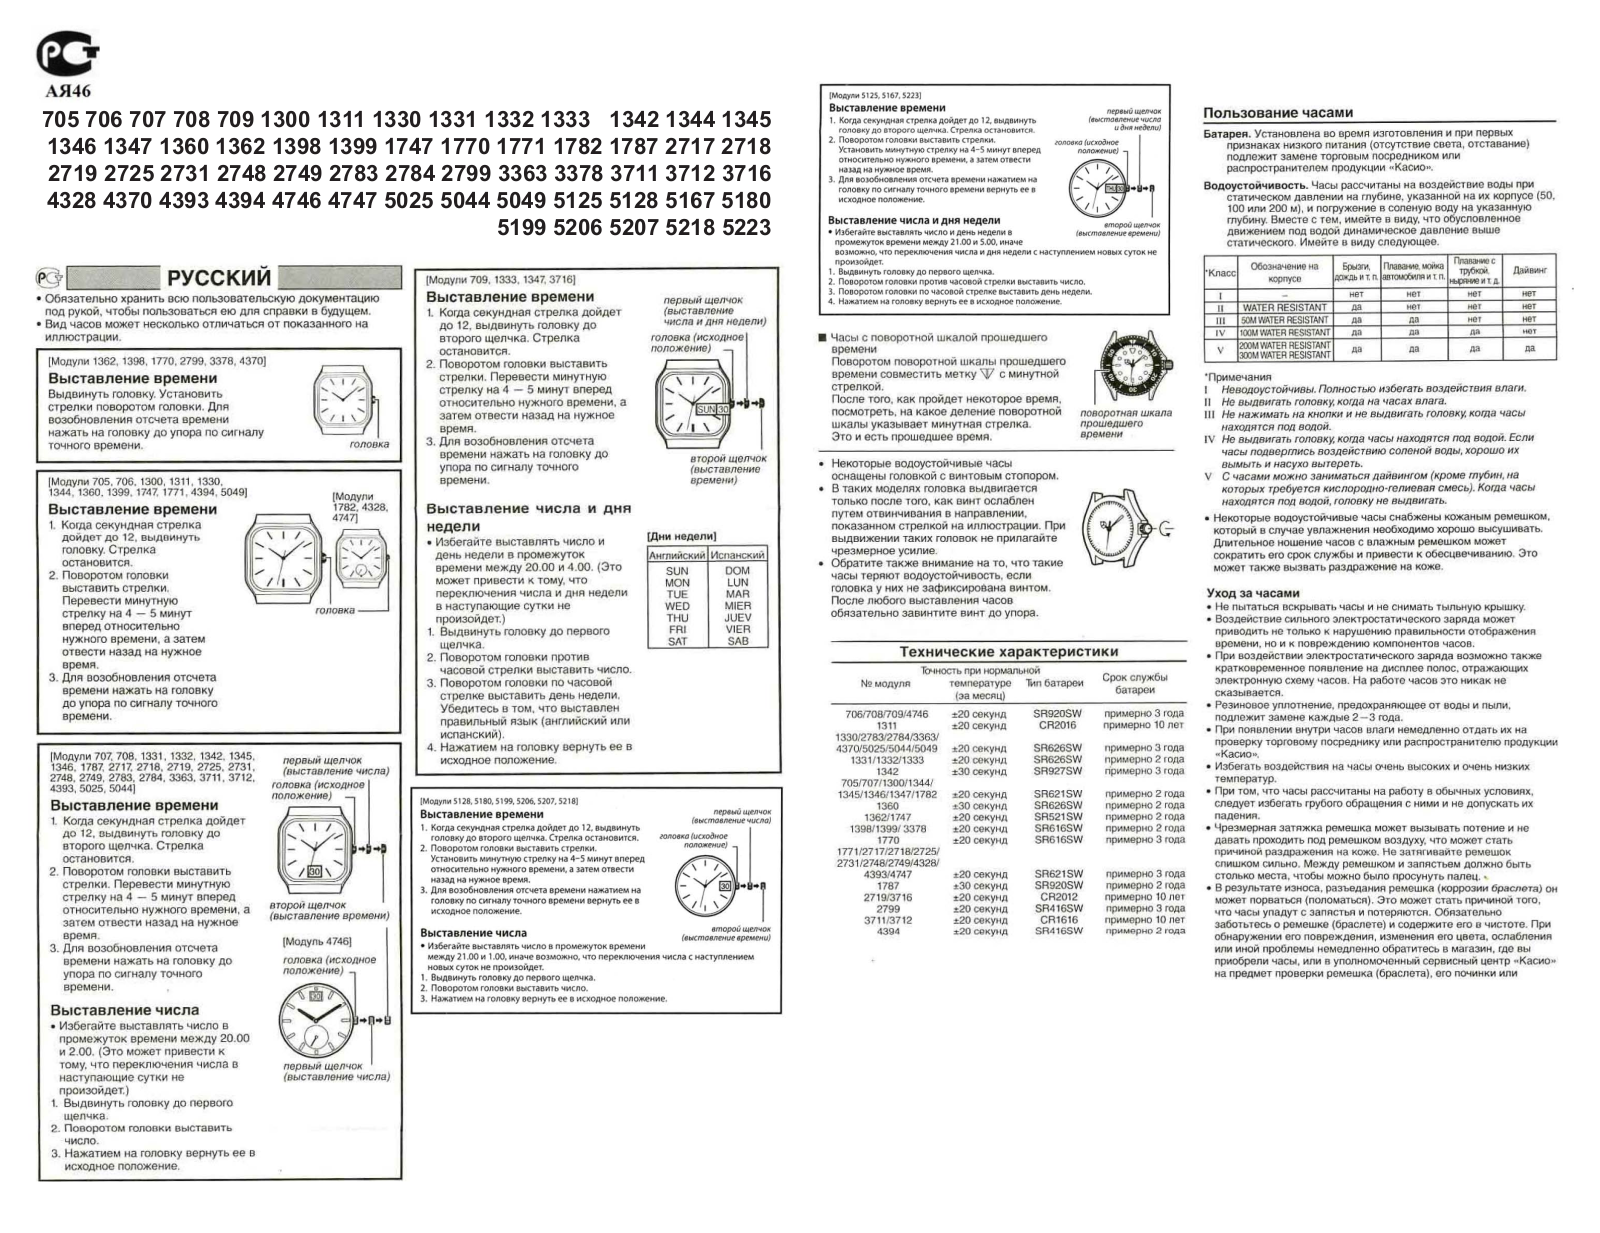 Casio 2749 User Manual